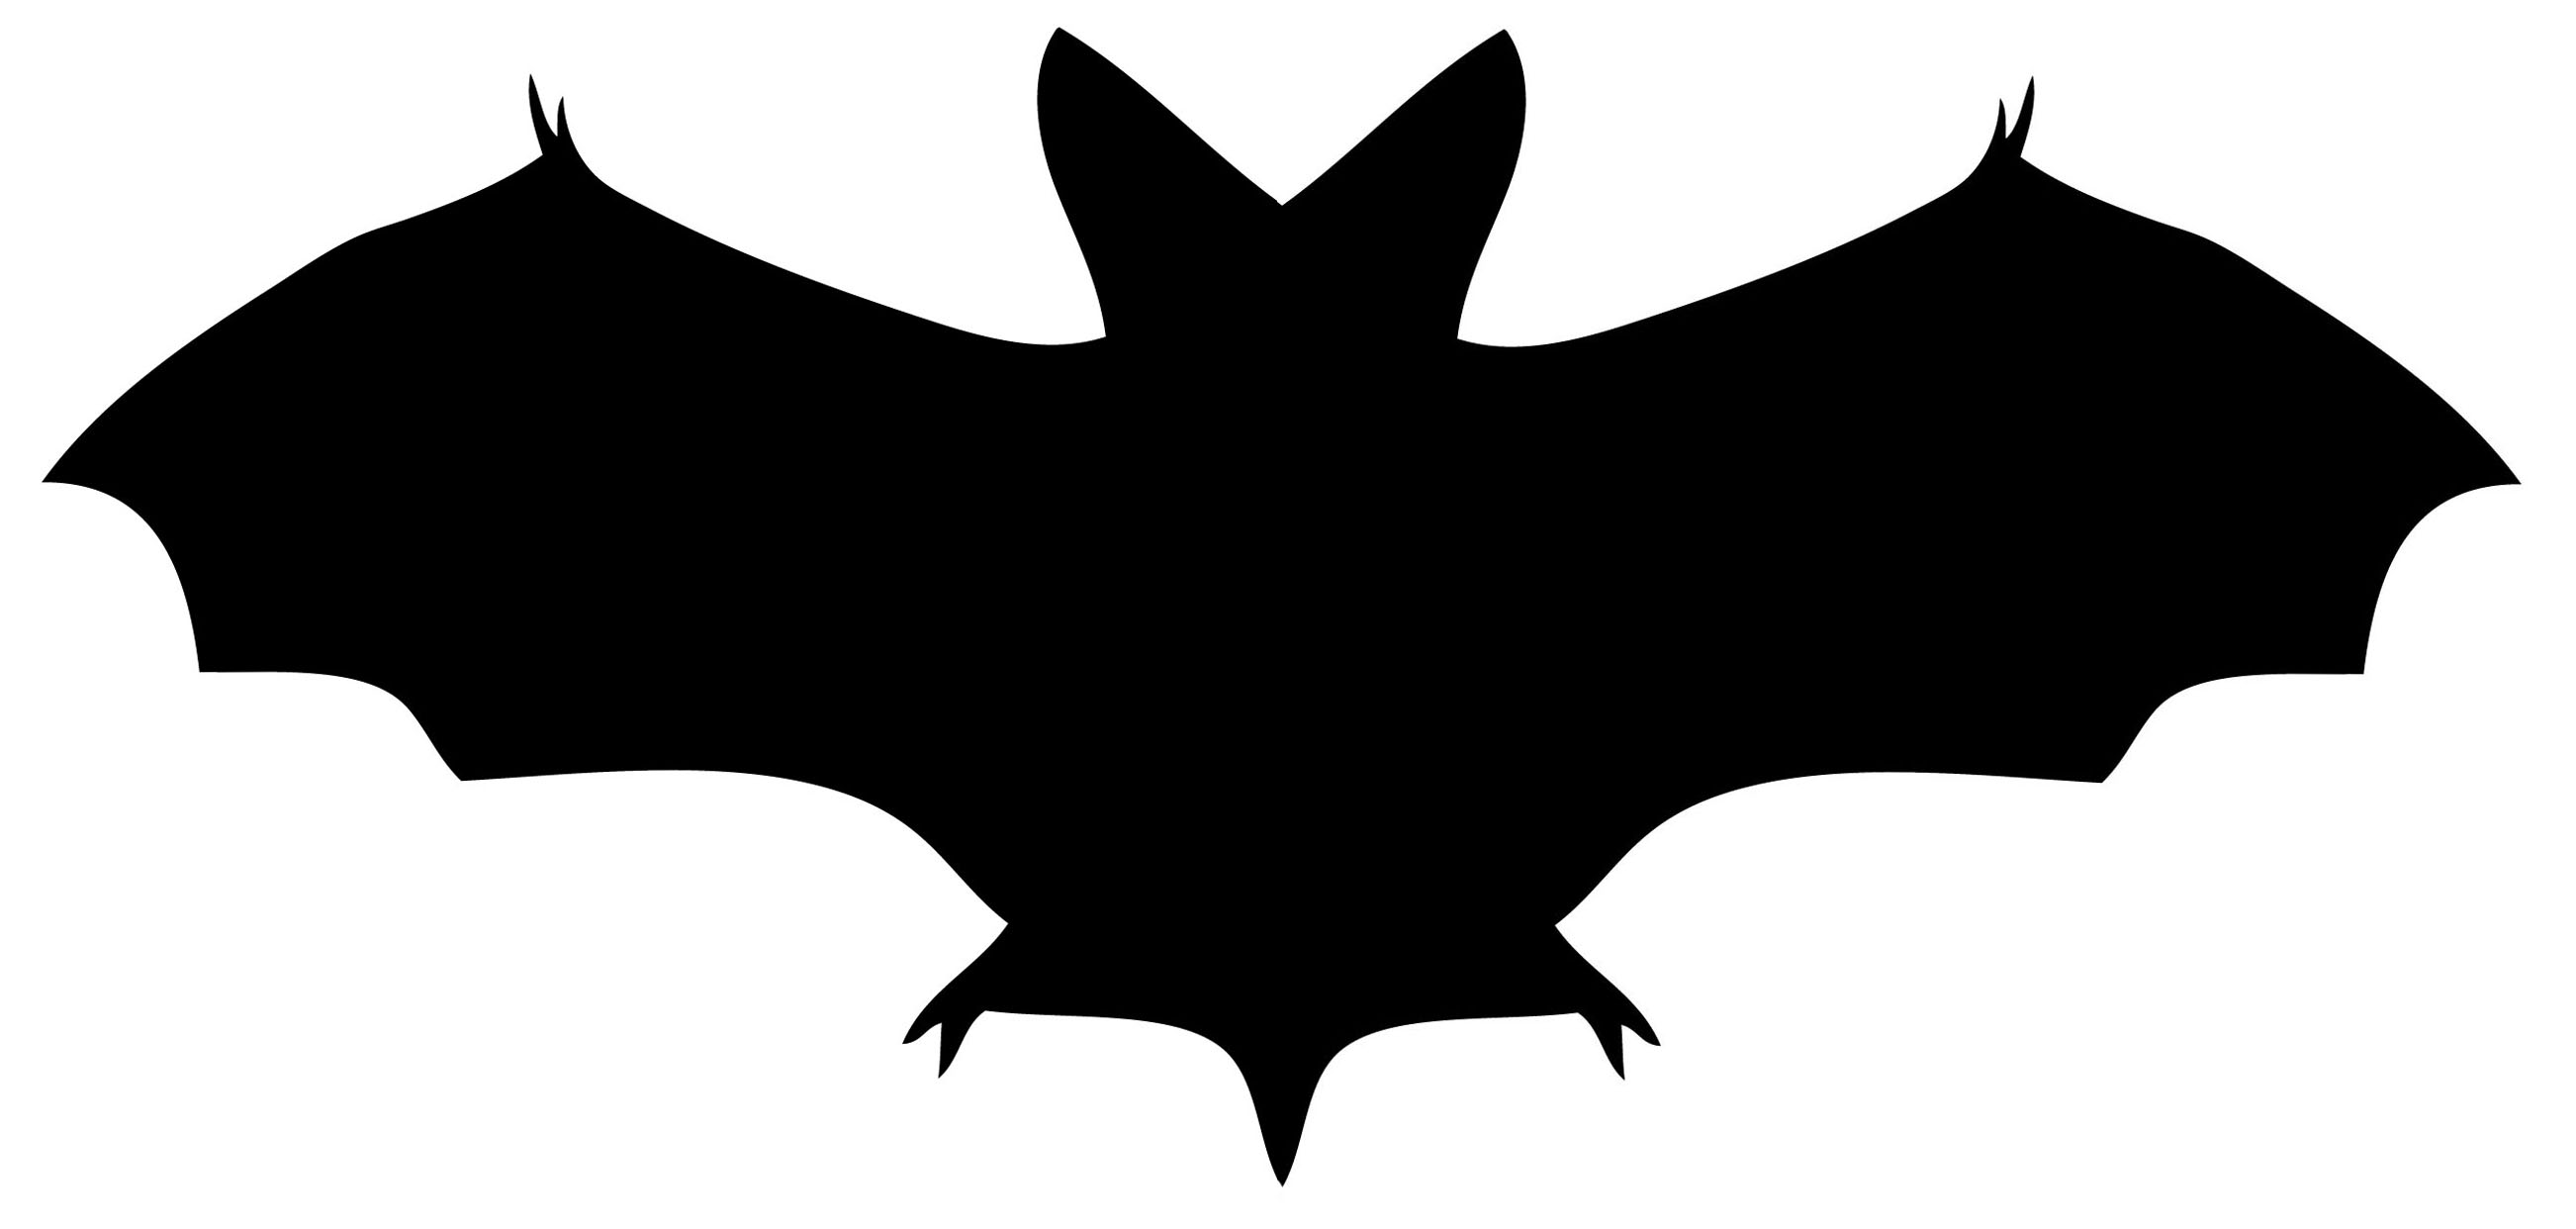 Halloween Bats Wallpapers